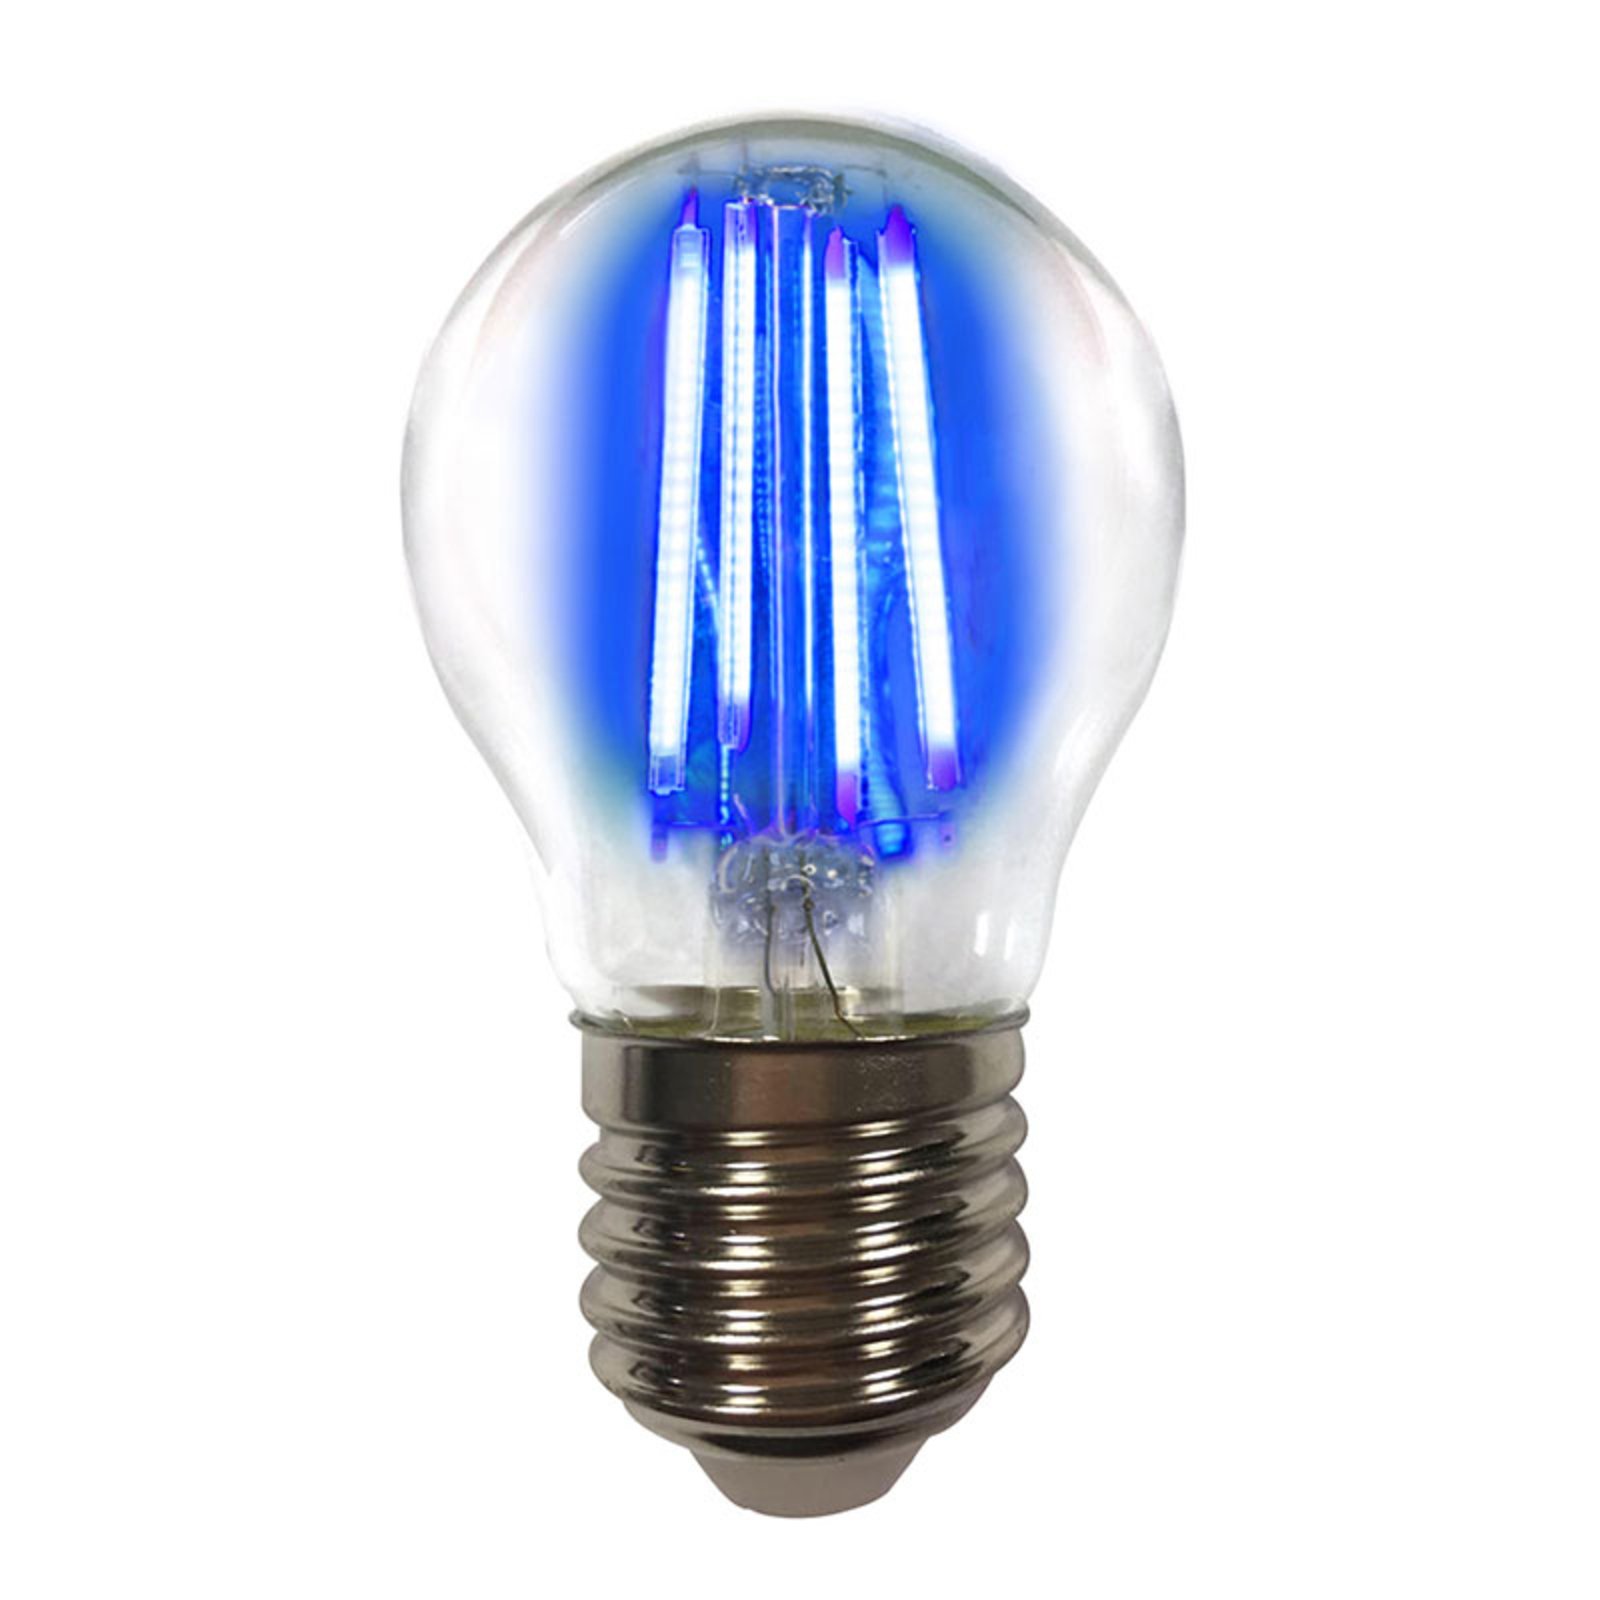 E27 4 W ampoule LED filament colorée, bleu